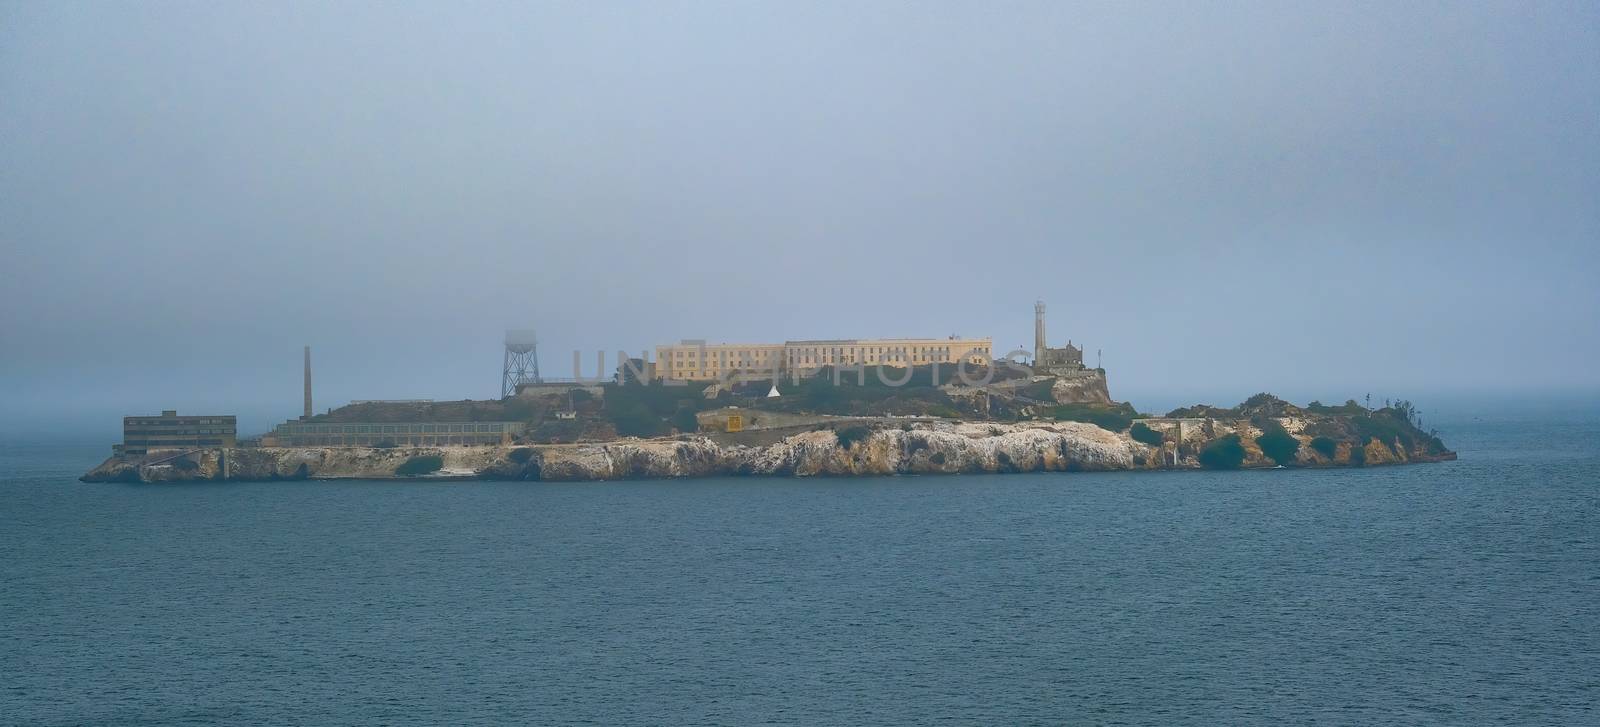 Prison of Alcatraz in rhe foggy bay